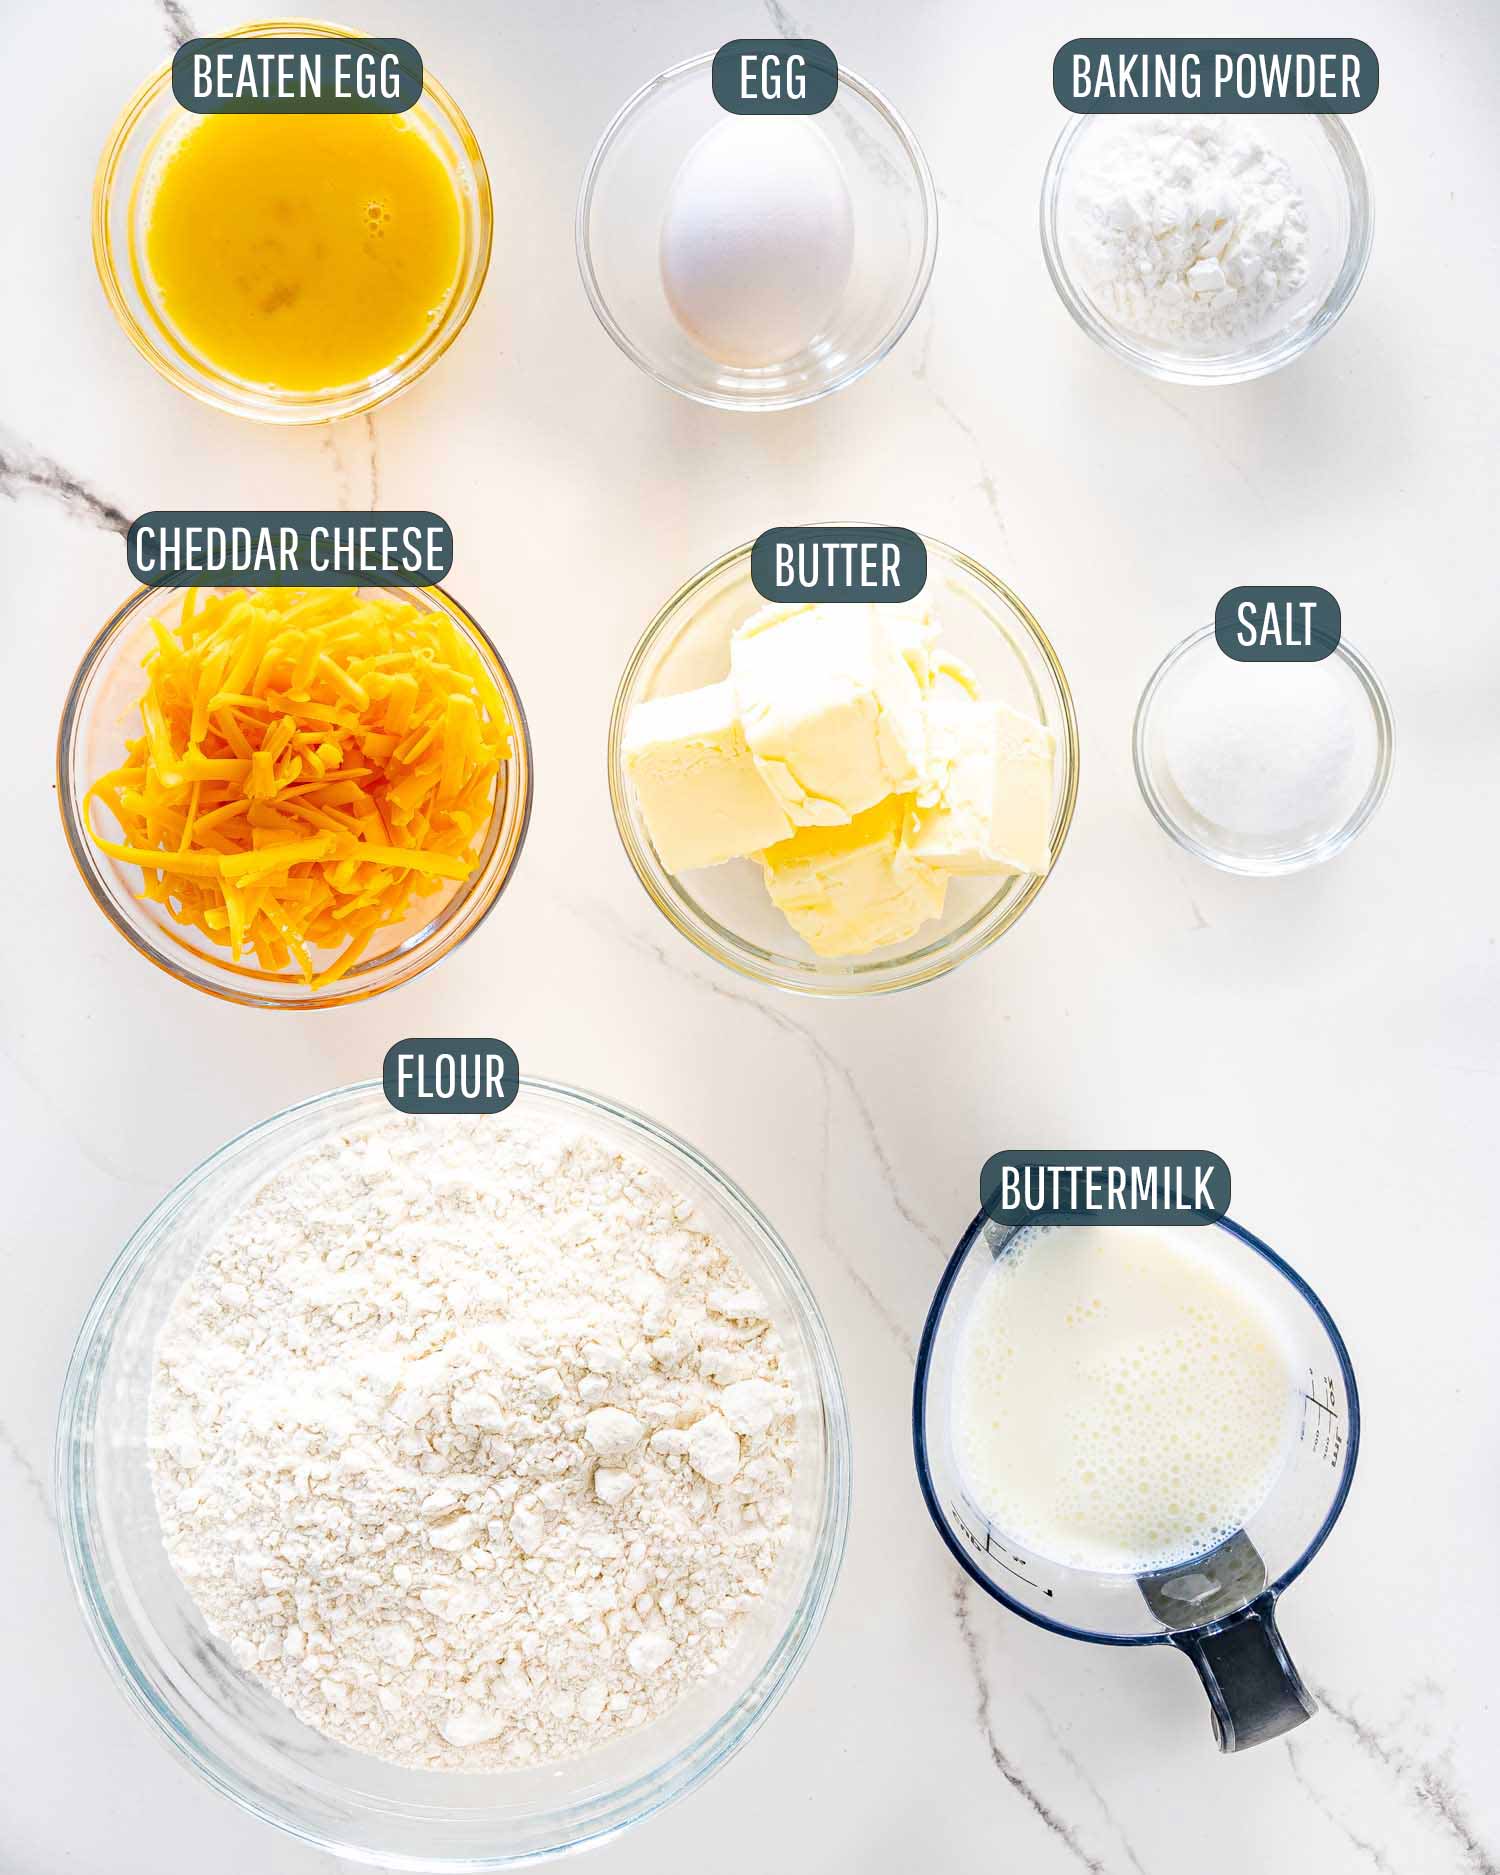 ingredienti necessari per fare i biscotti al formaggio.